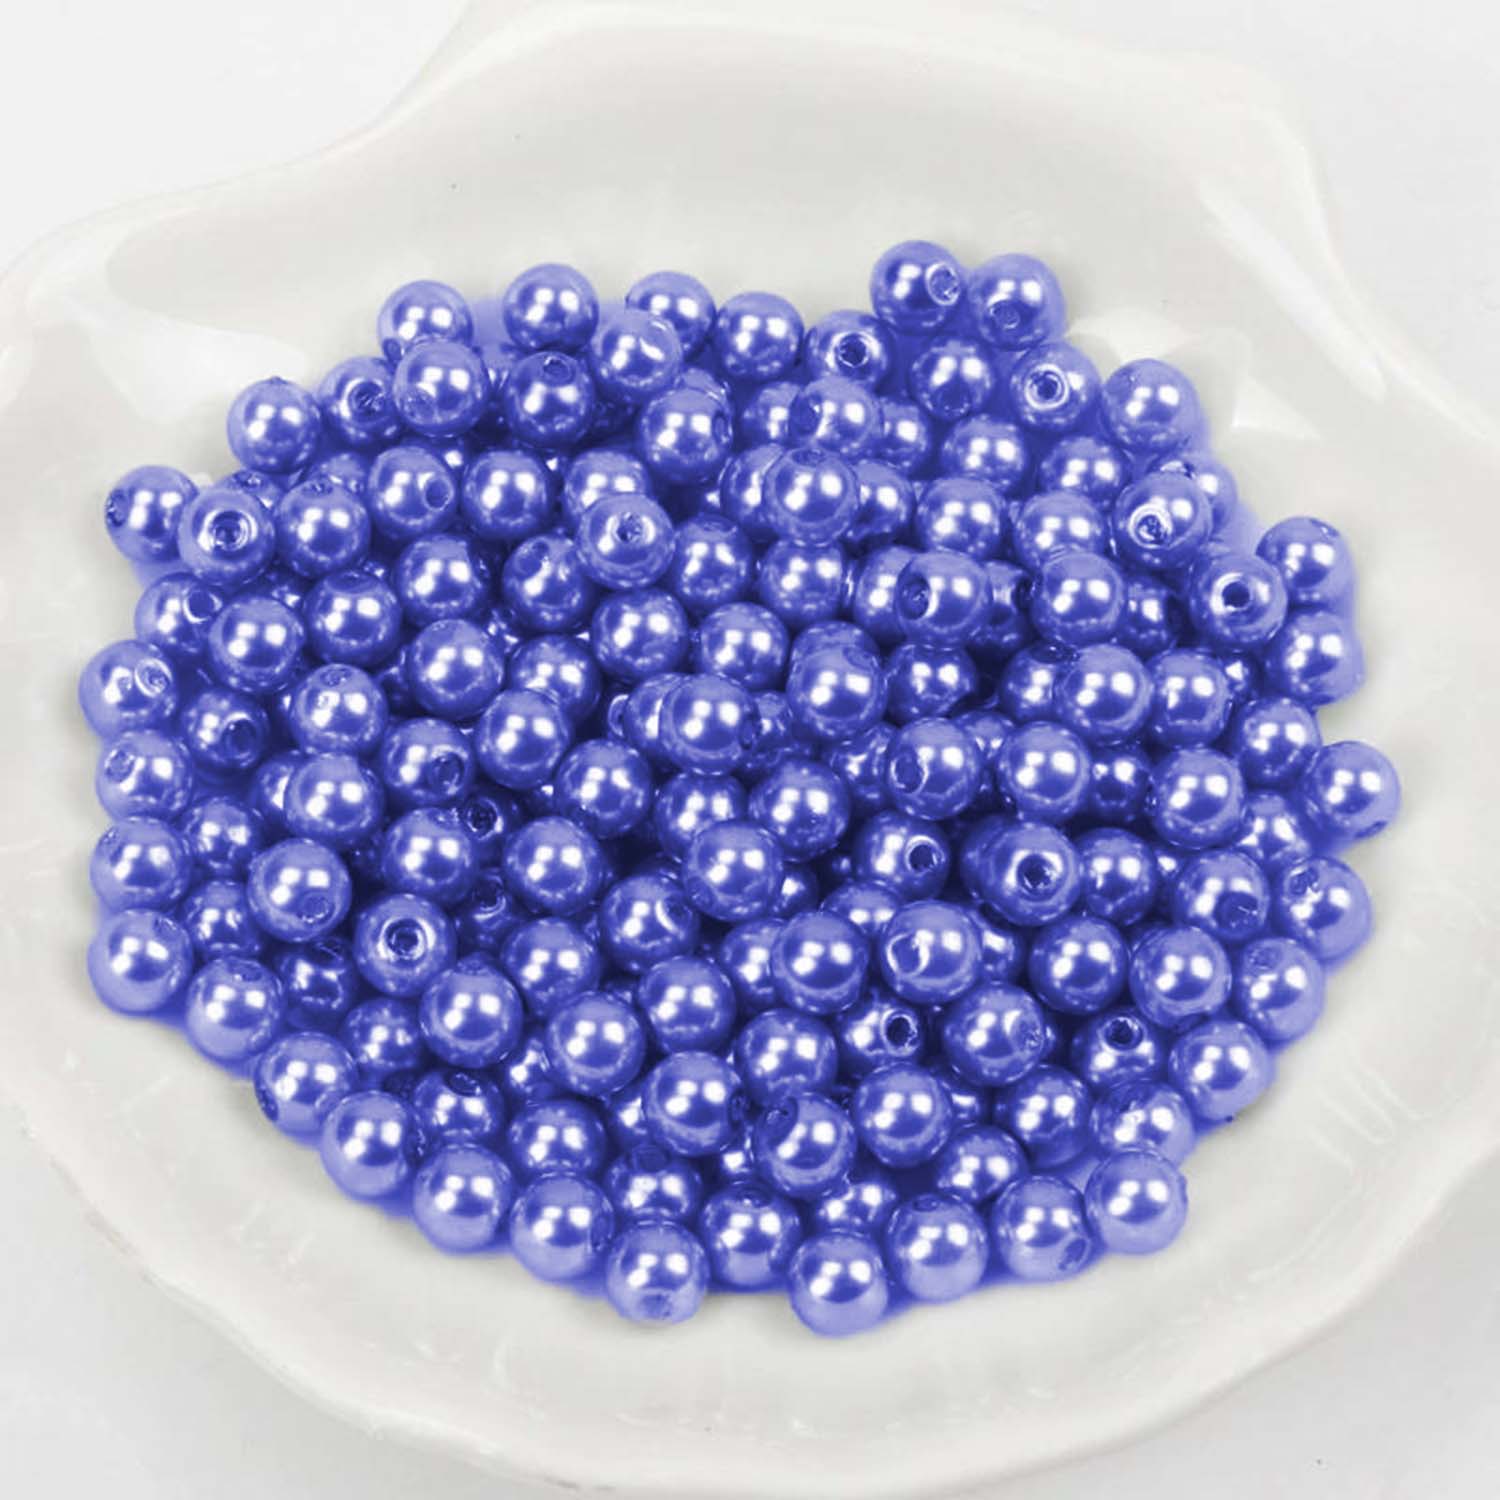 Wachsperlen - 600 Stück - 2mm - Blau